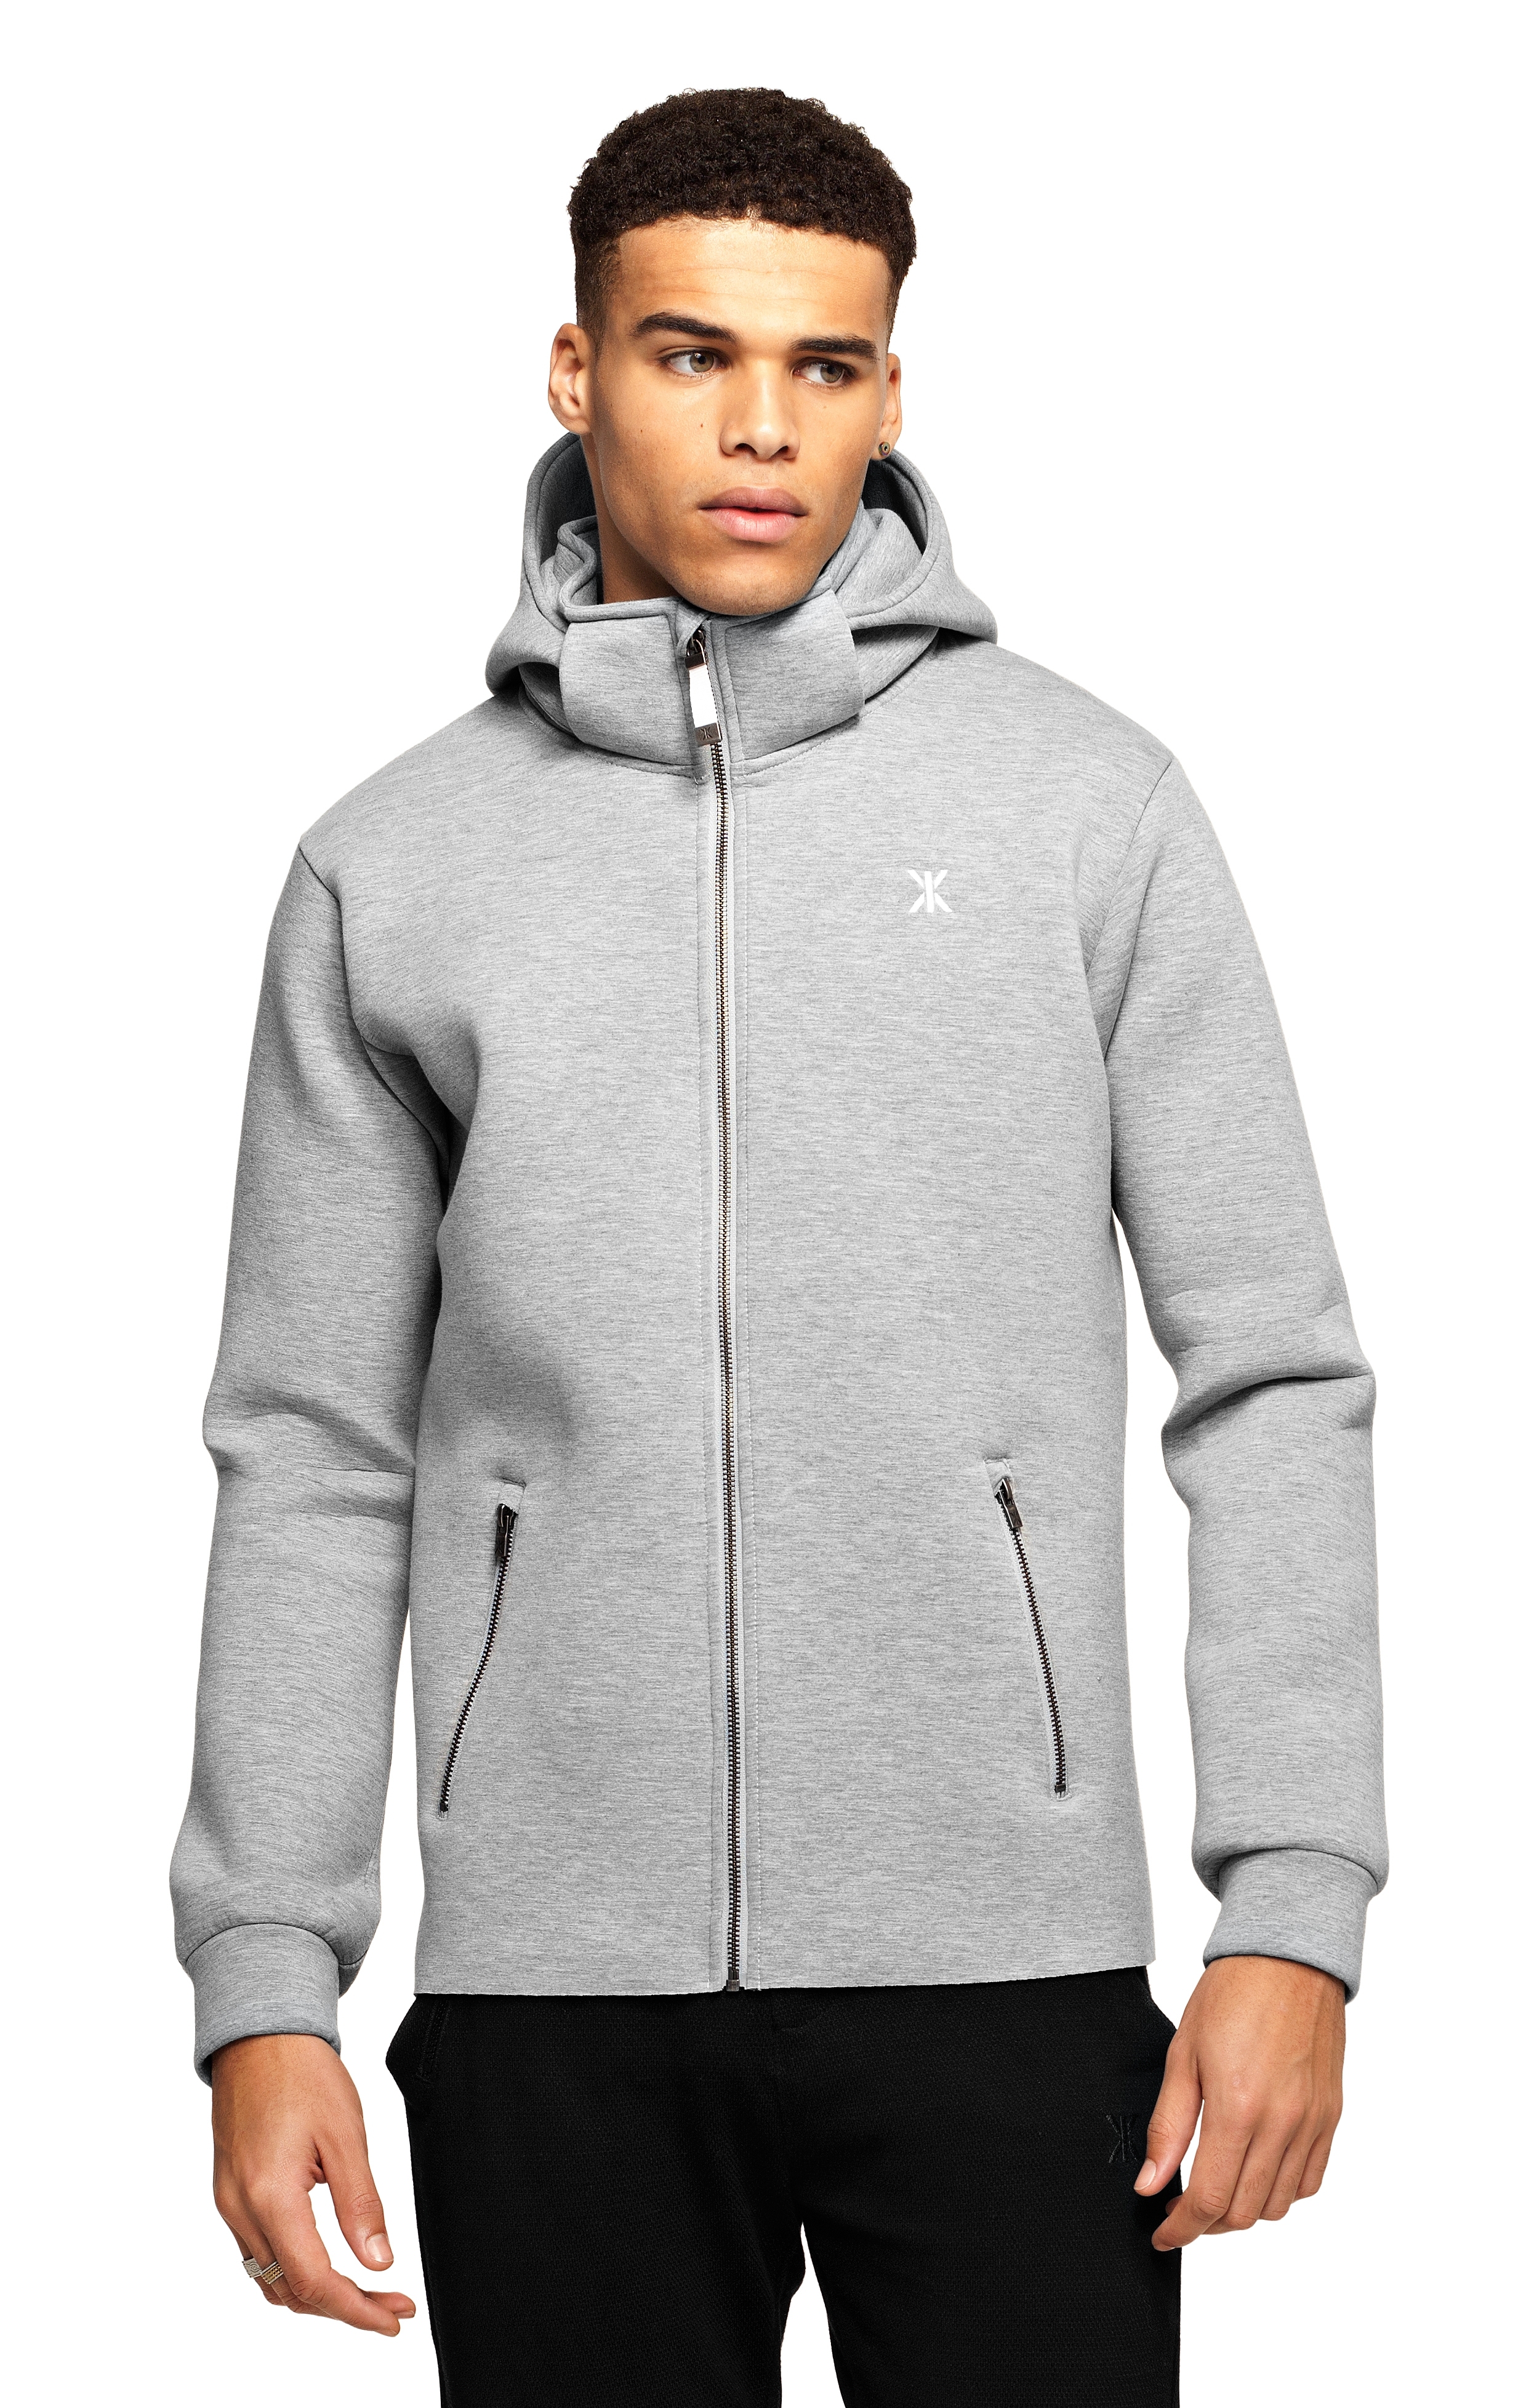 grey melange hoodie